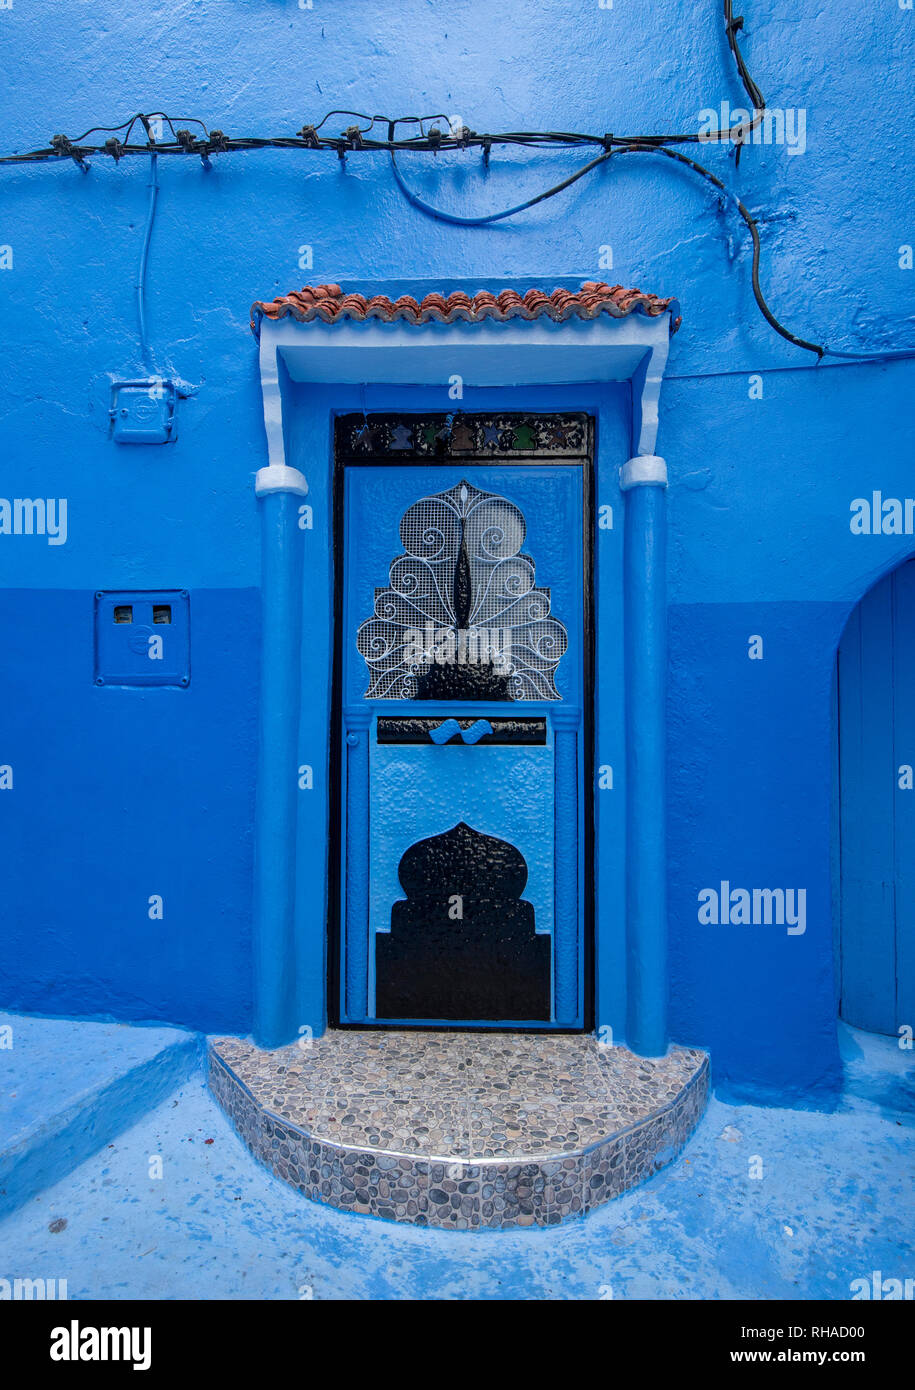 Belle vue sur la ville bleue Chefchaouen, Maroc, dans la médina. Des détails architecturaux traditionnels marocains et des maisons peintes et des portes Banque D'Images